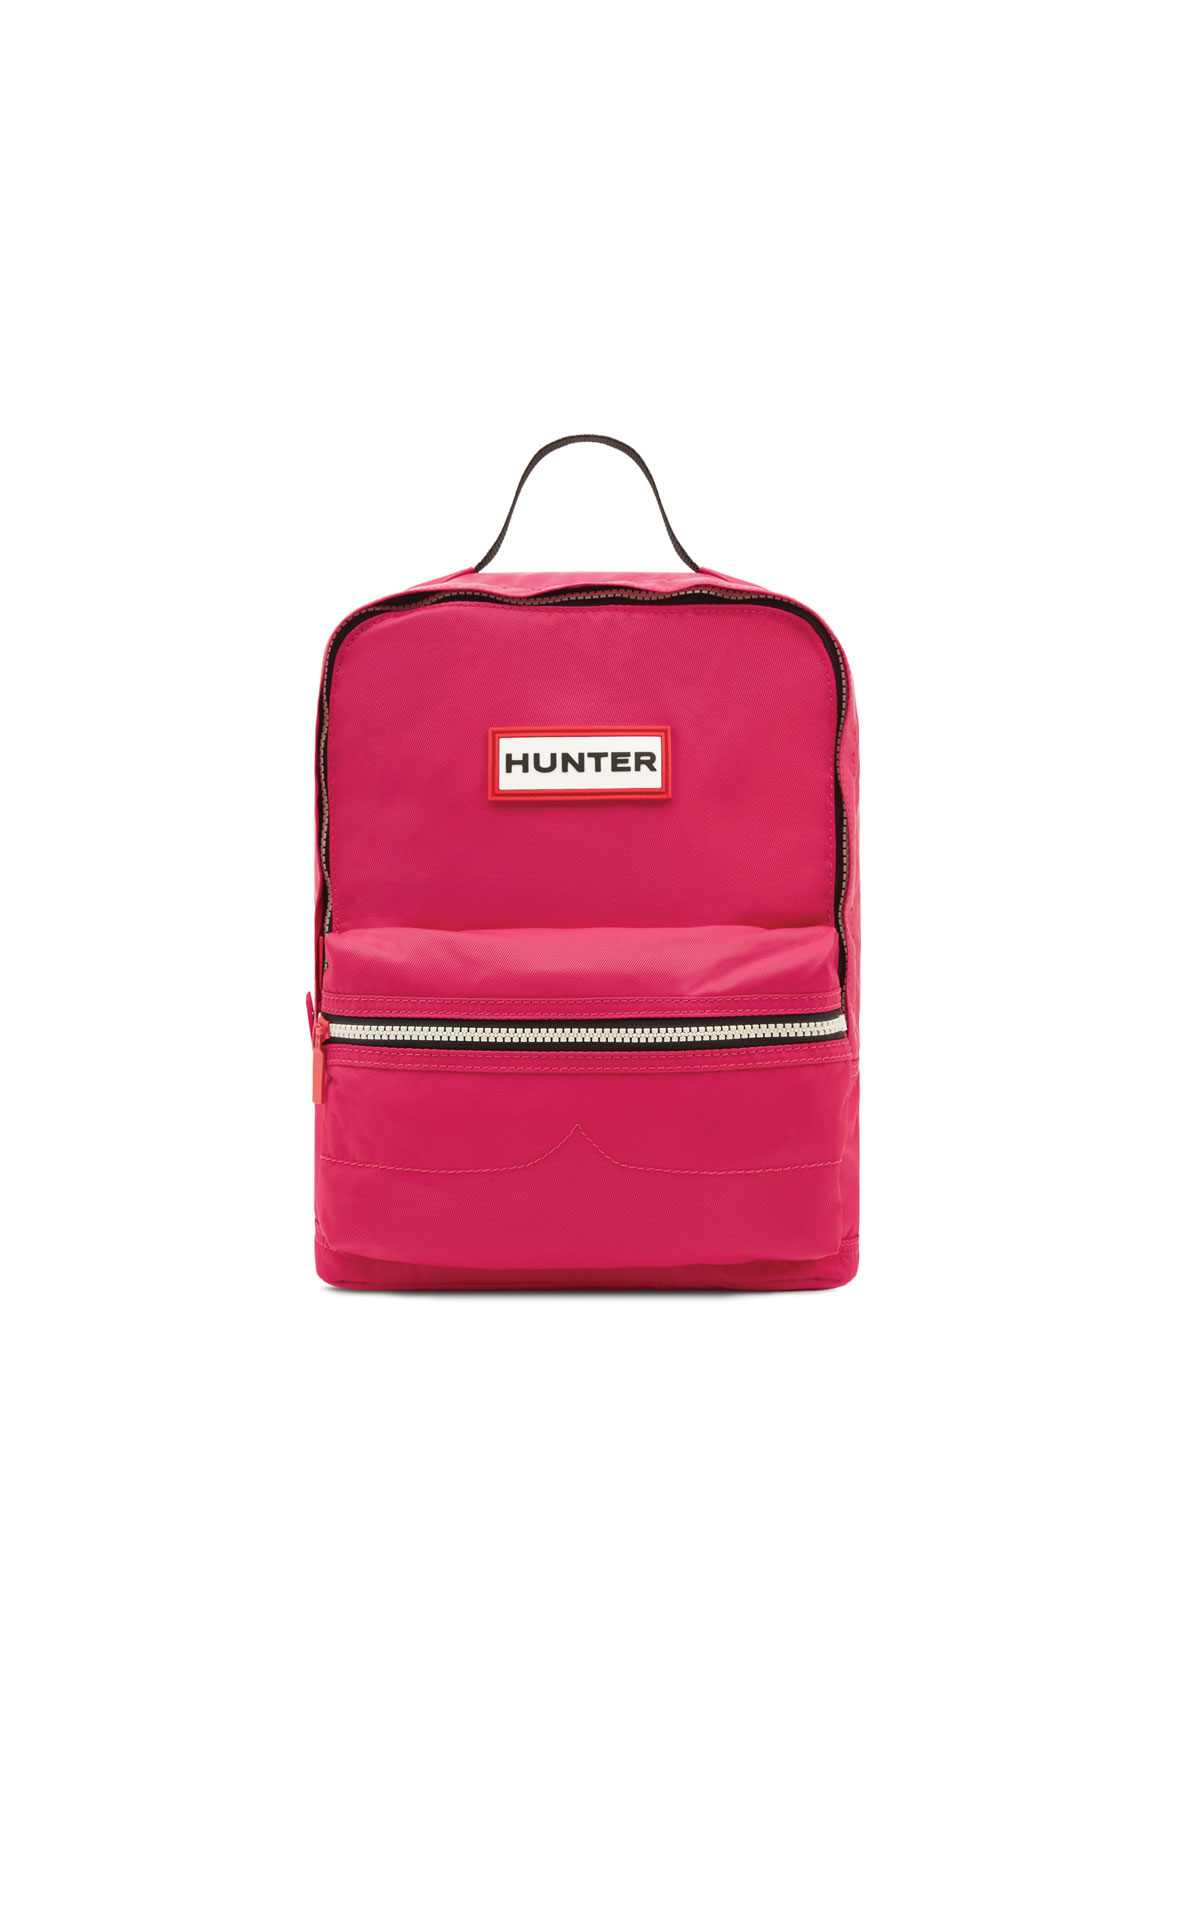 Hunter Kids original backpack from Bicester Village